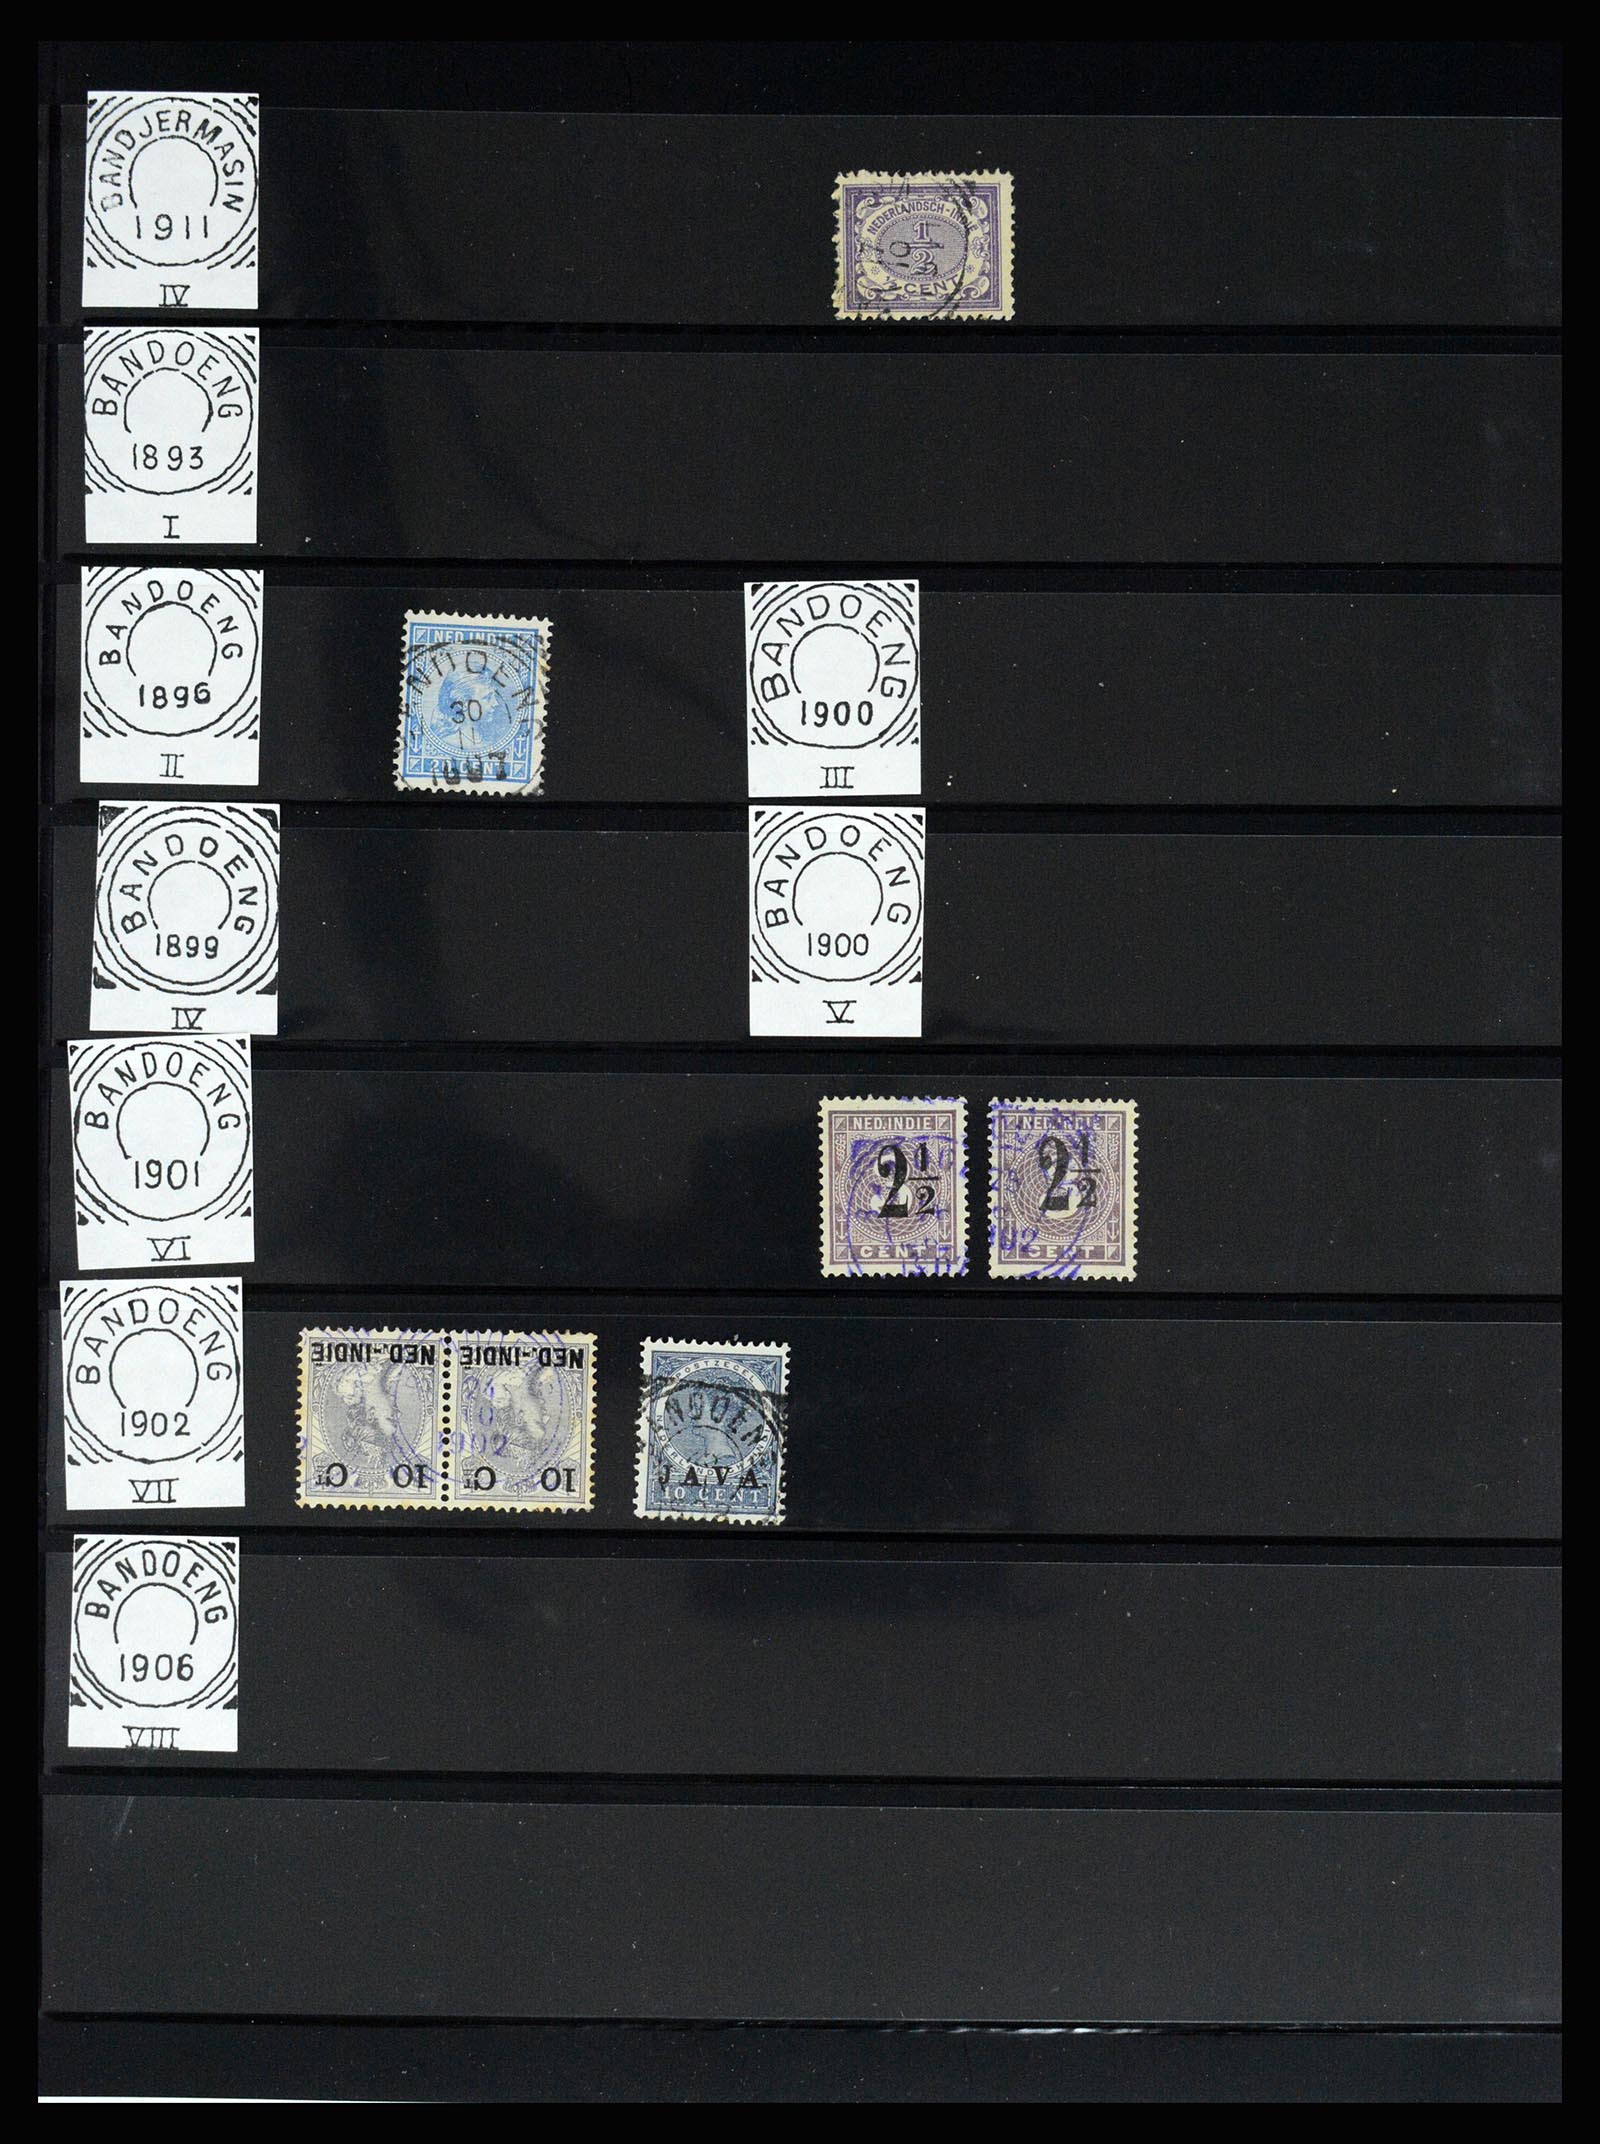 36512 104 - Stamp collection 36512 Nederlands Indië stempels 1872-1930.